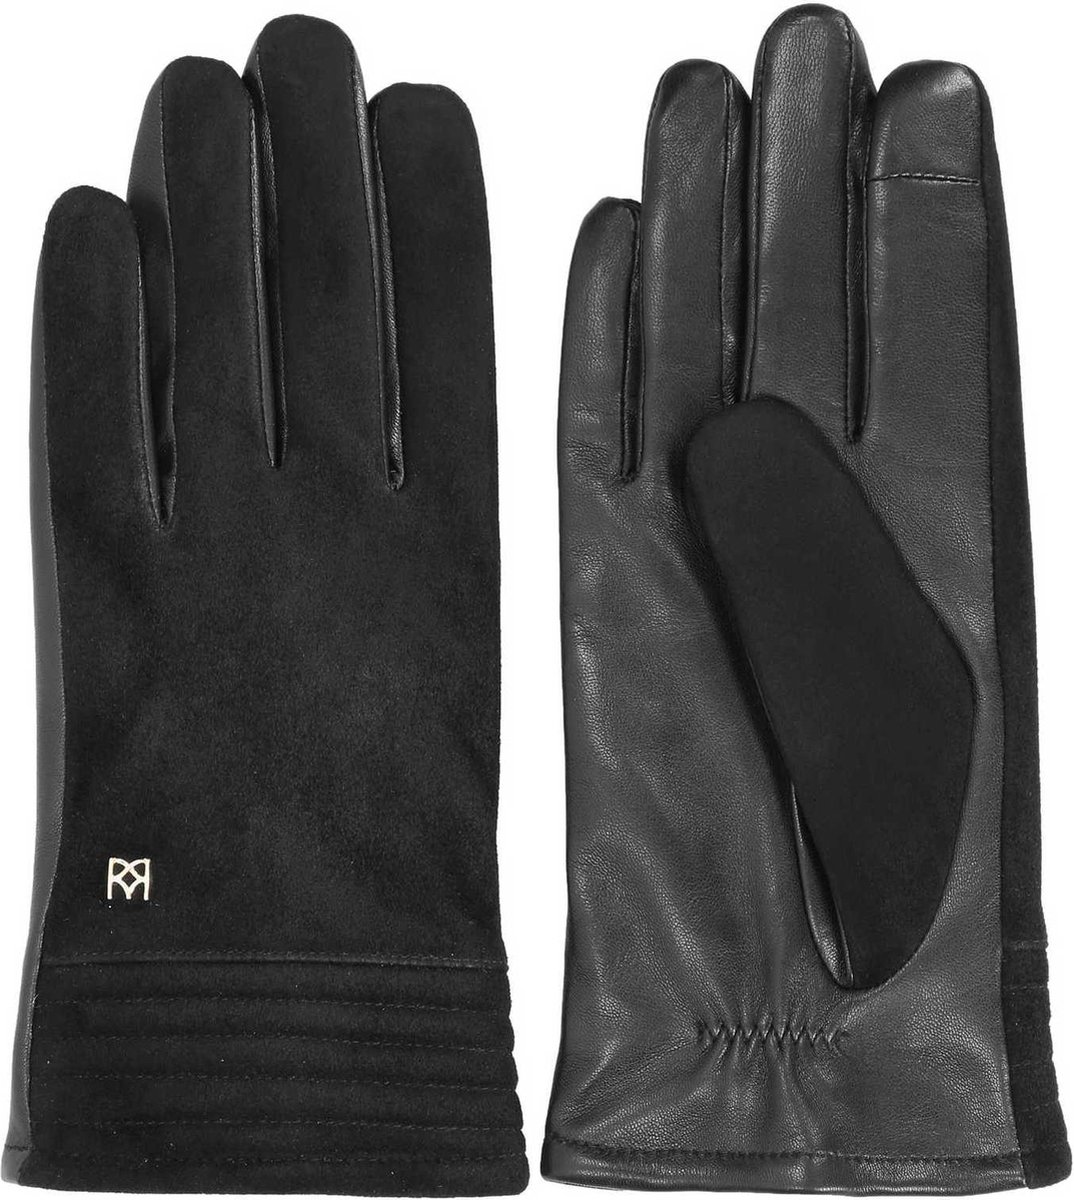 Zwarte handschoenen voor dames